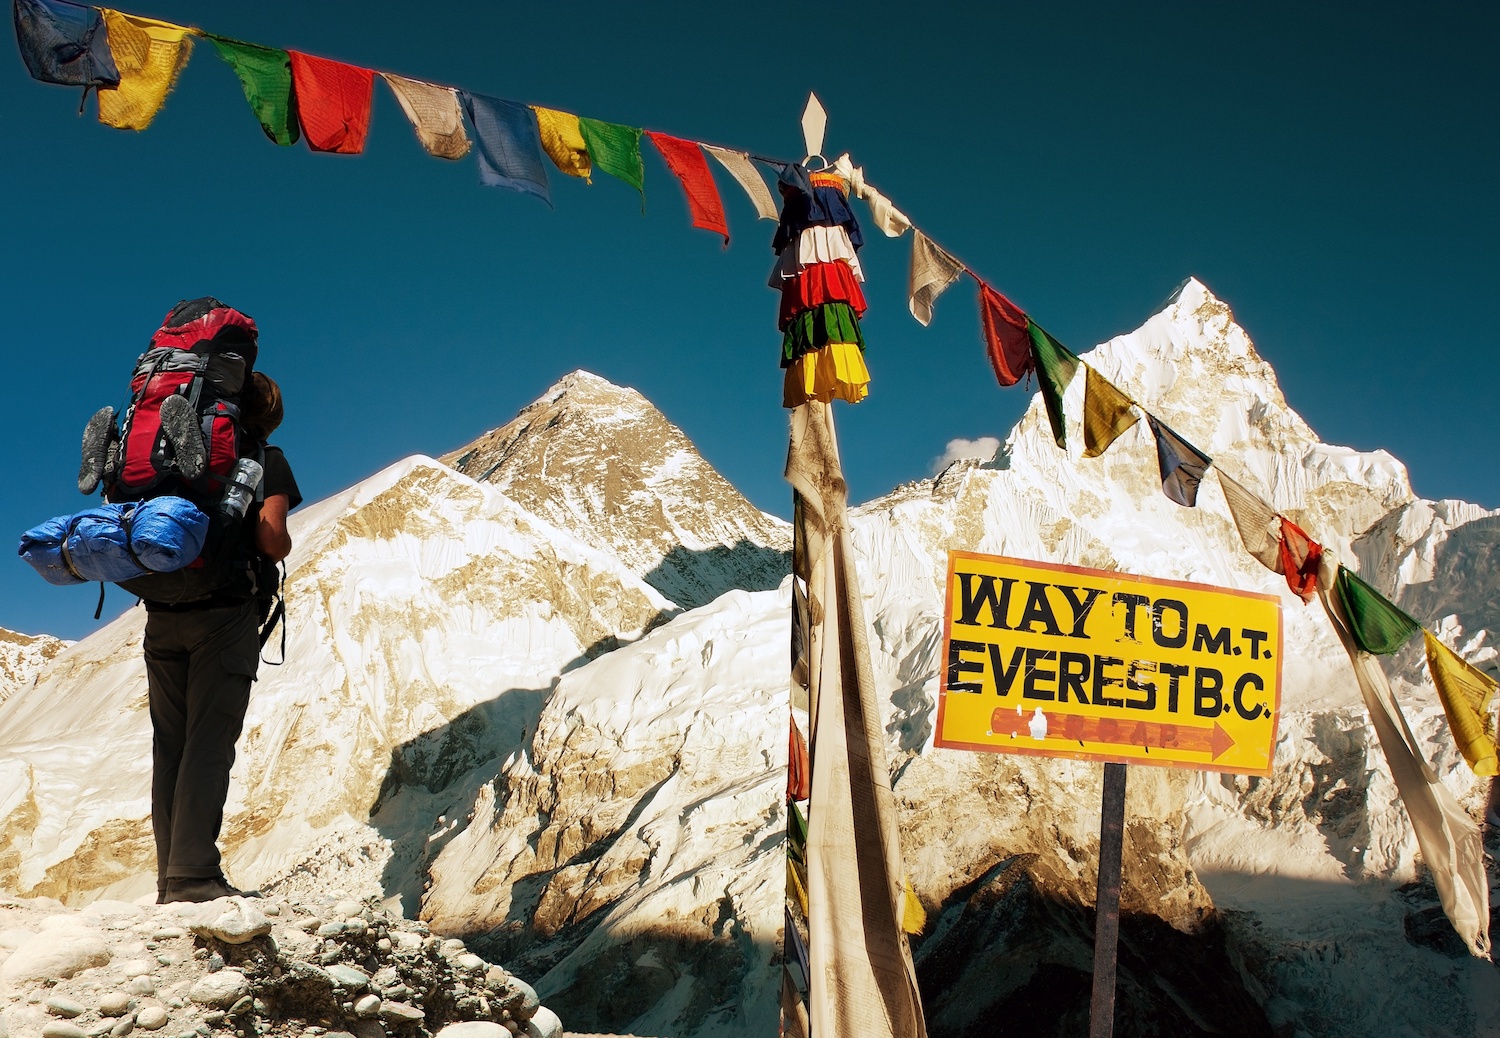 珠穆朗瑪峰是很受登山愛好者歡迎的尼泊爾行山路線